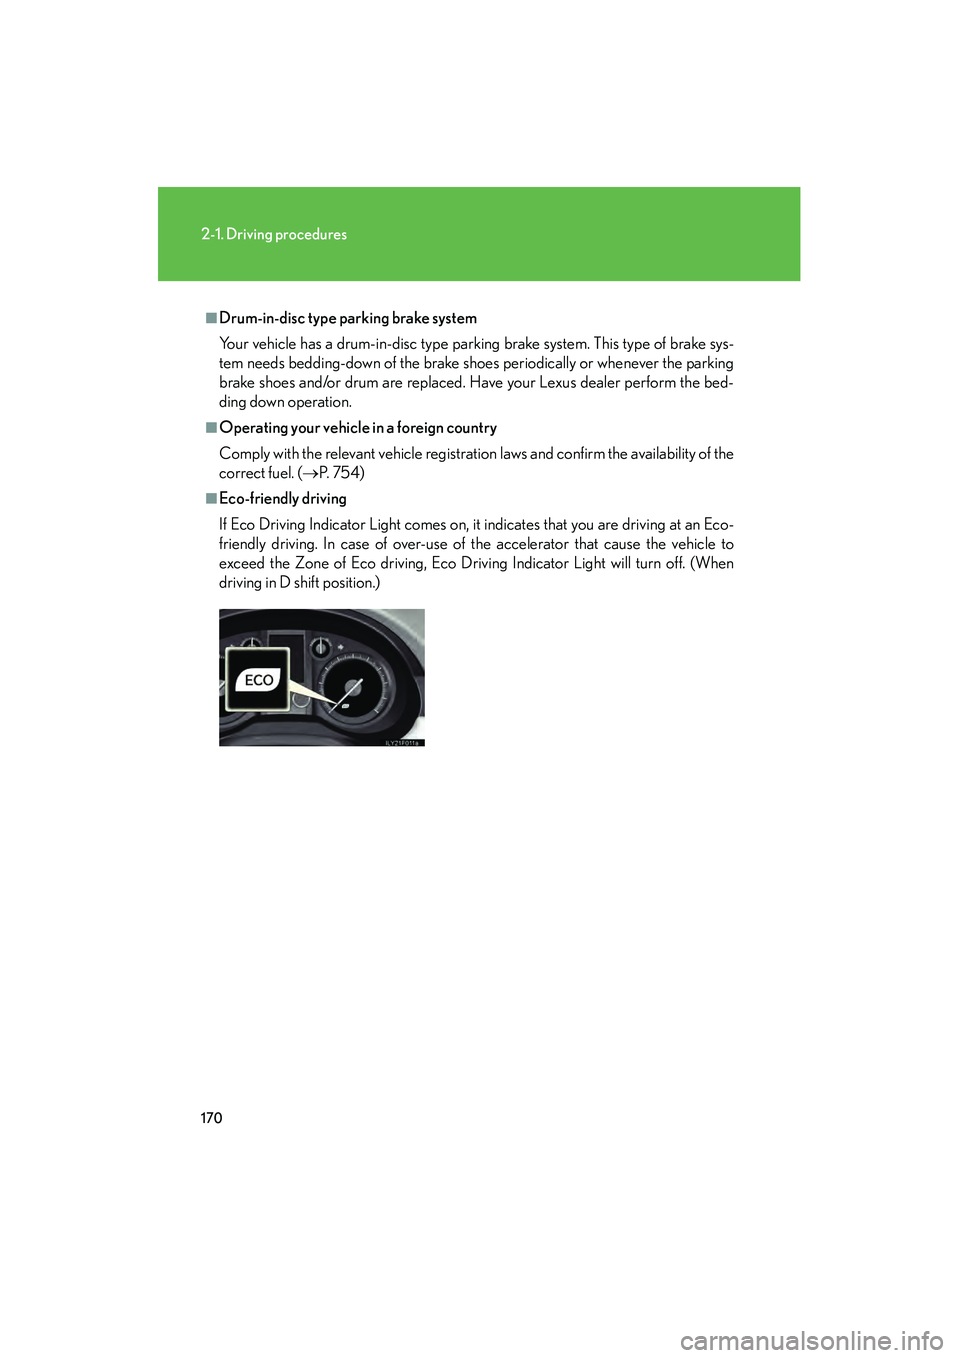 Lexus GX460 2010  Owners Manual 170
2-1. Driving procedures
GX460_CANADA (OM60F29U)
■Drum-in-disc type parking brake system
Your vehicle has a drum-in-disc type parking brake system. This type of brake sys-
tem needs bedding-down 